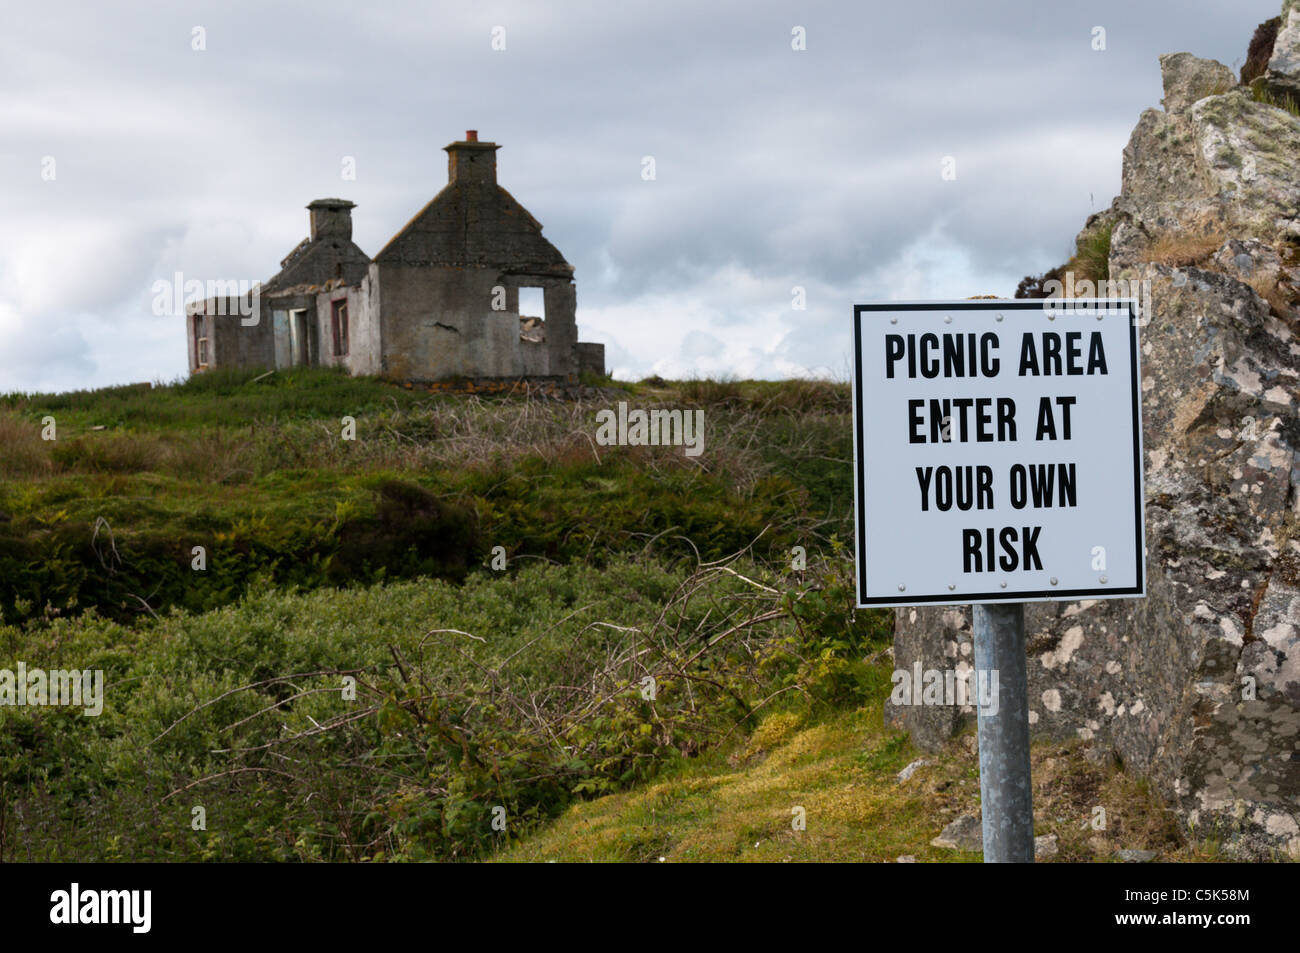 Eine echte Willkommensgruß für einen Picknickplatz warnt davor, dass es auf eigene Gefahr verwendet werden soll. Stockfoto